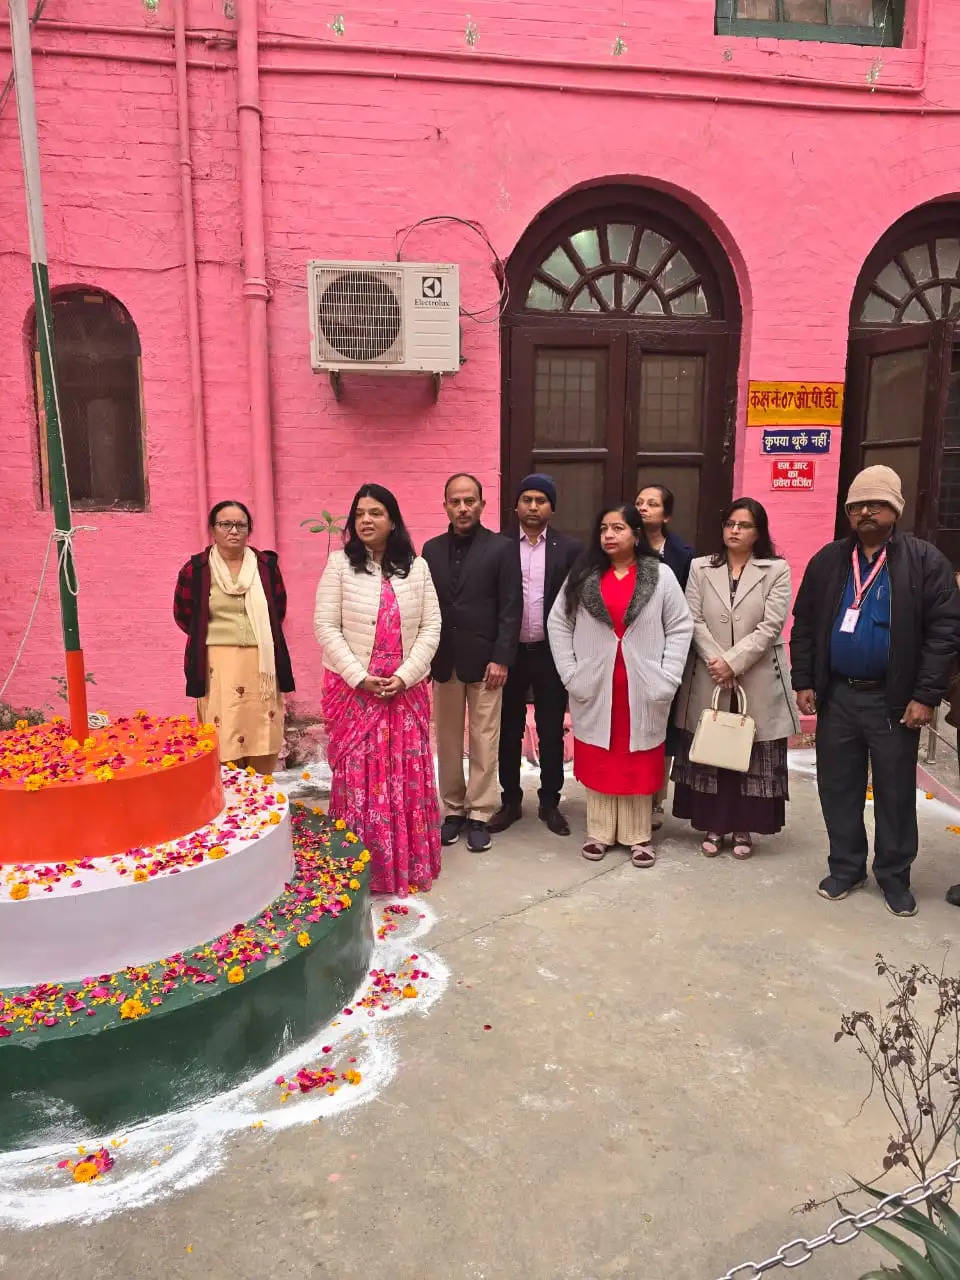 Republic Day: महिला चिकित्सालय कबीरचौरा में 75 वें गणतंत्र दिवस का आयोजन, प्रमुख अधिकारी मनीषा सिंह रही उपस्थित 